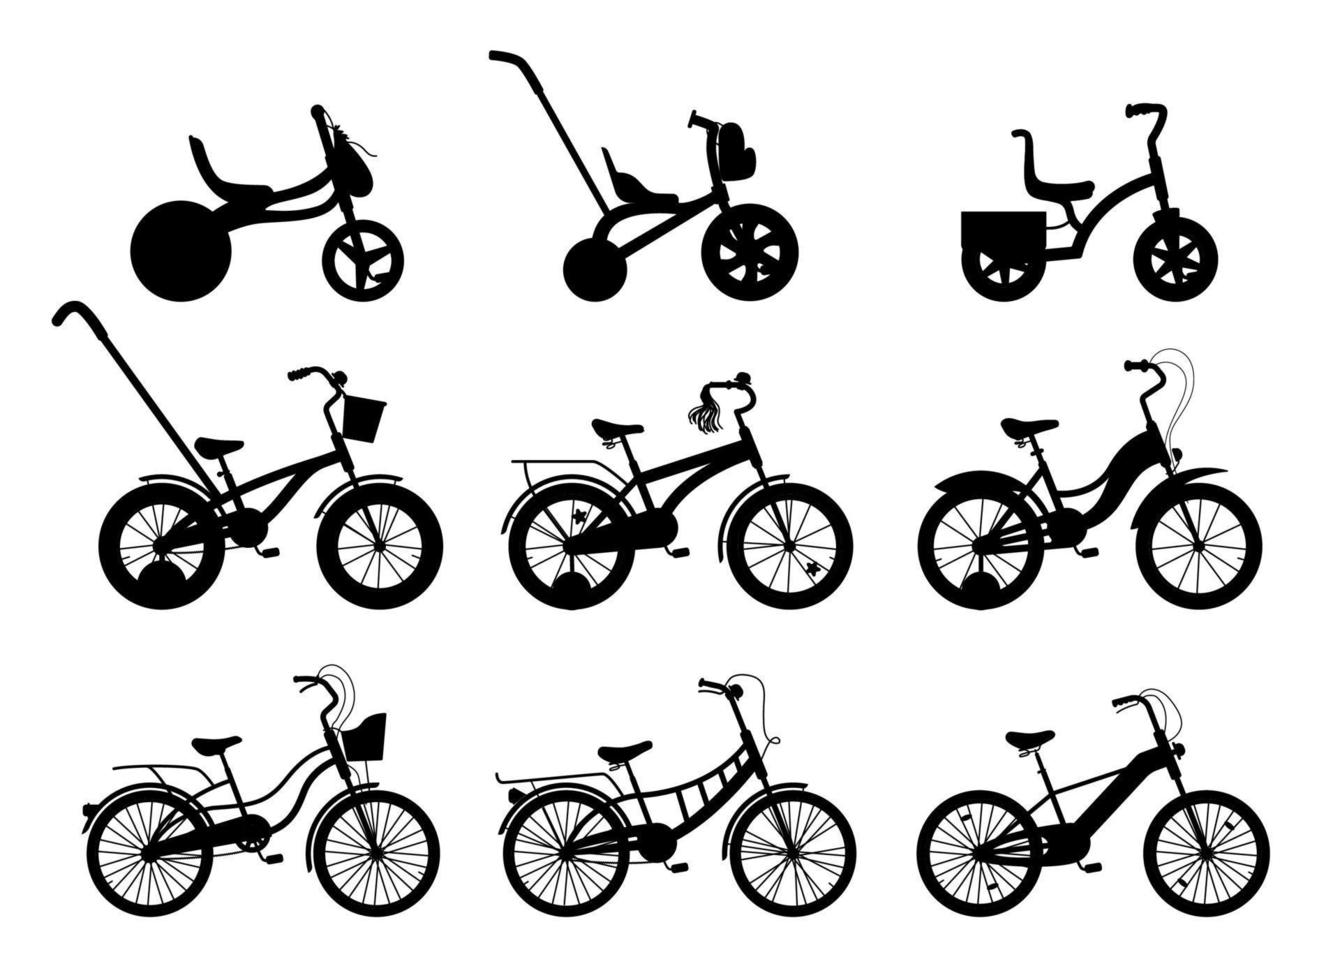 samling siluettcyklar. set med olika två-, tre- och fyrhjuliga cyklar med olika ramtyper. vektor illustration av manliga och kvinnliga fordon.